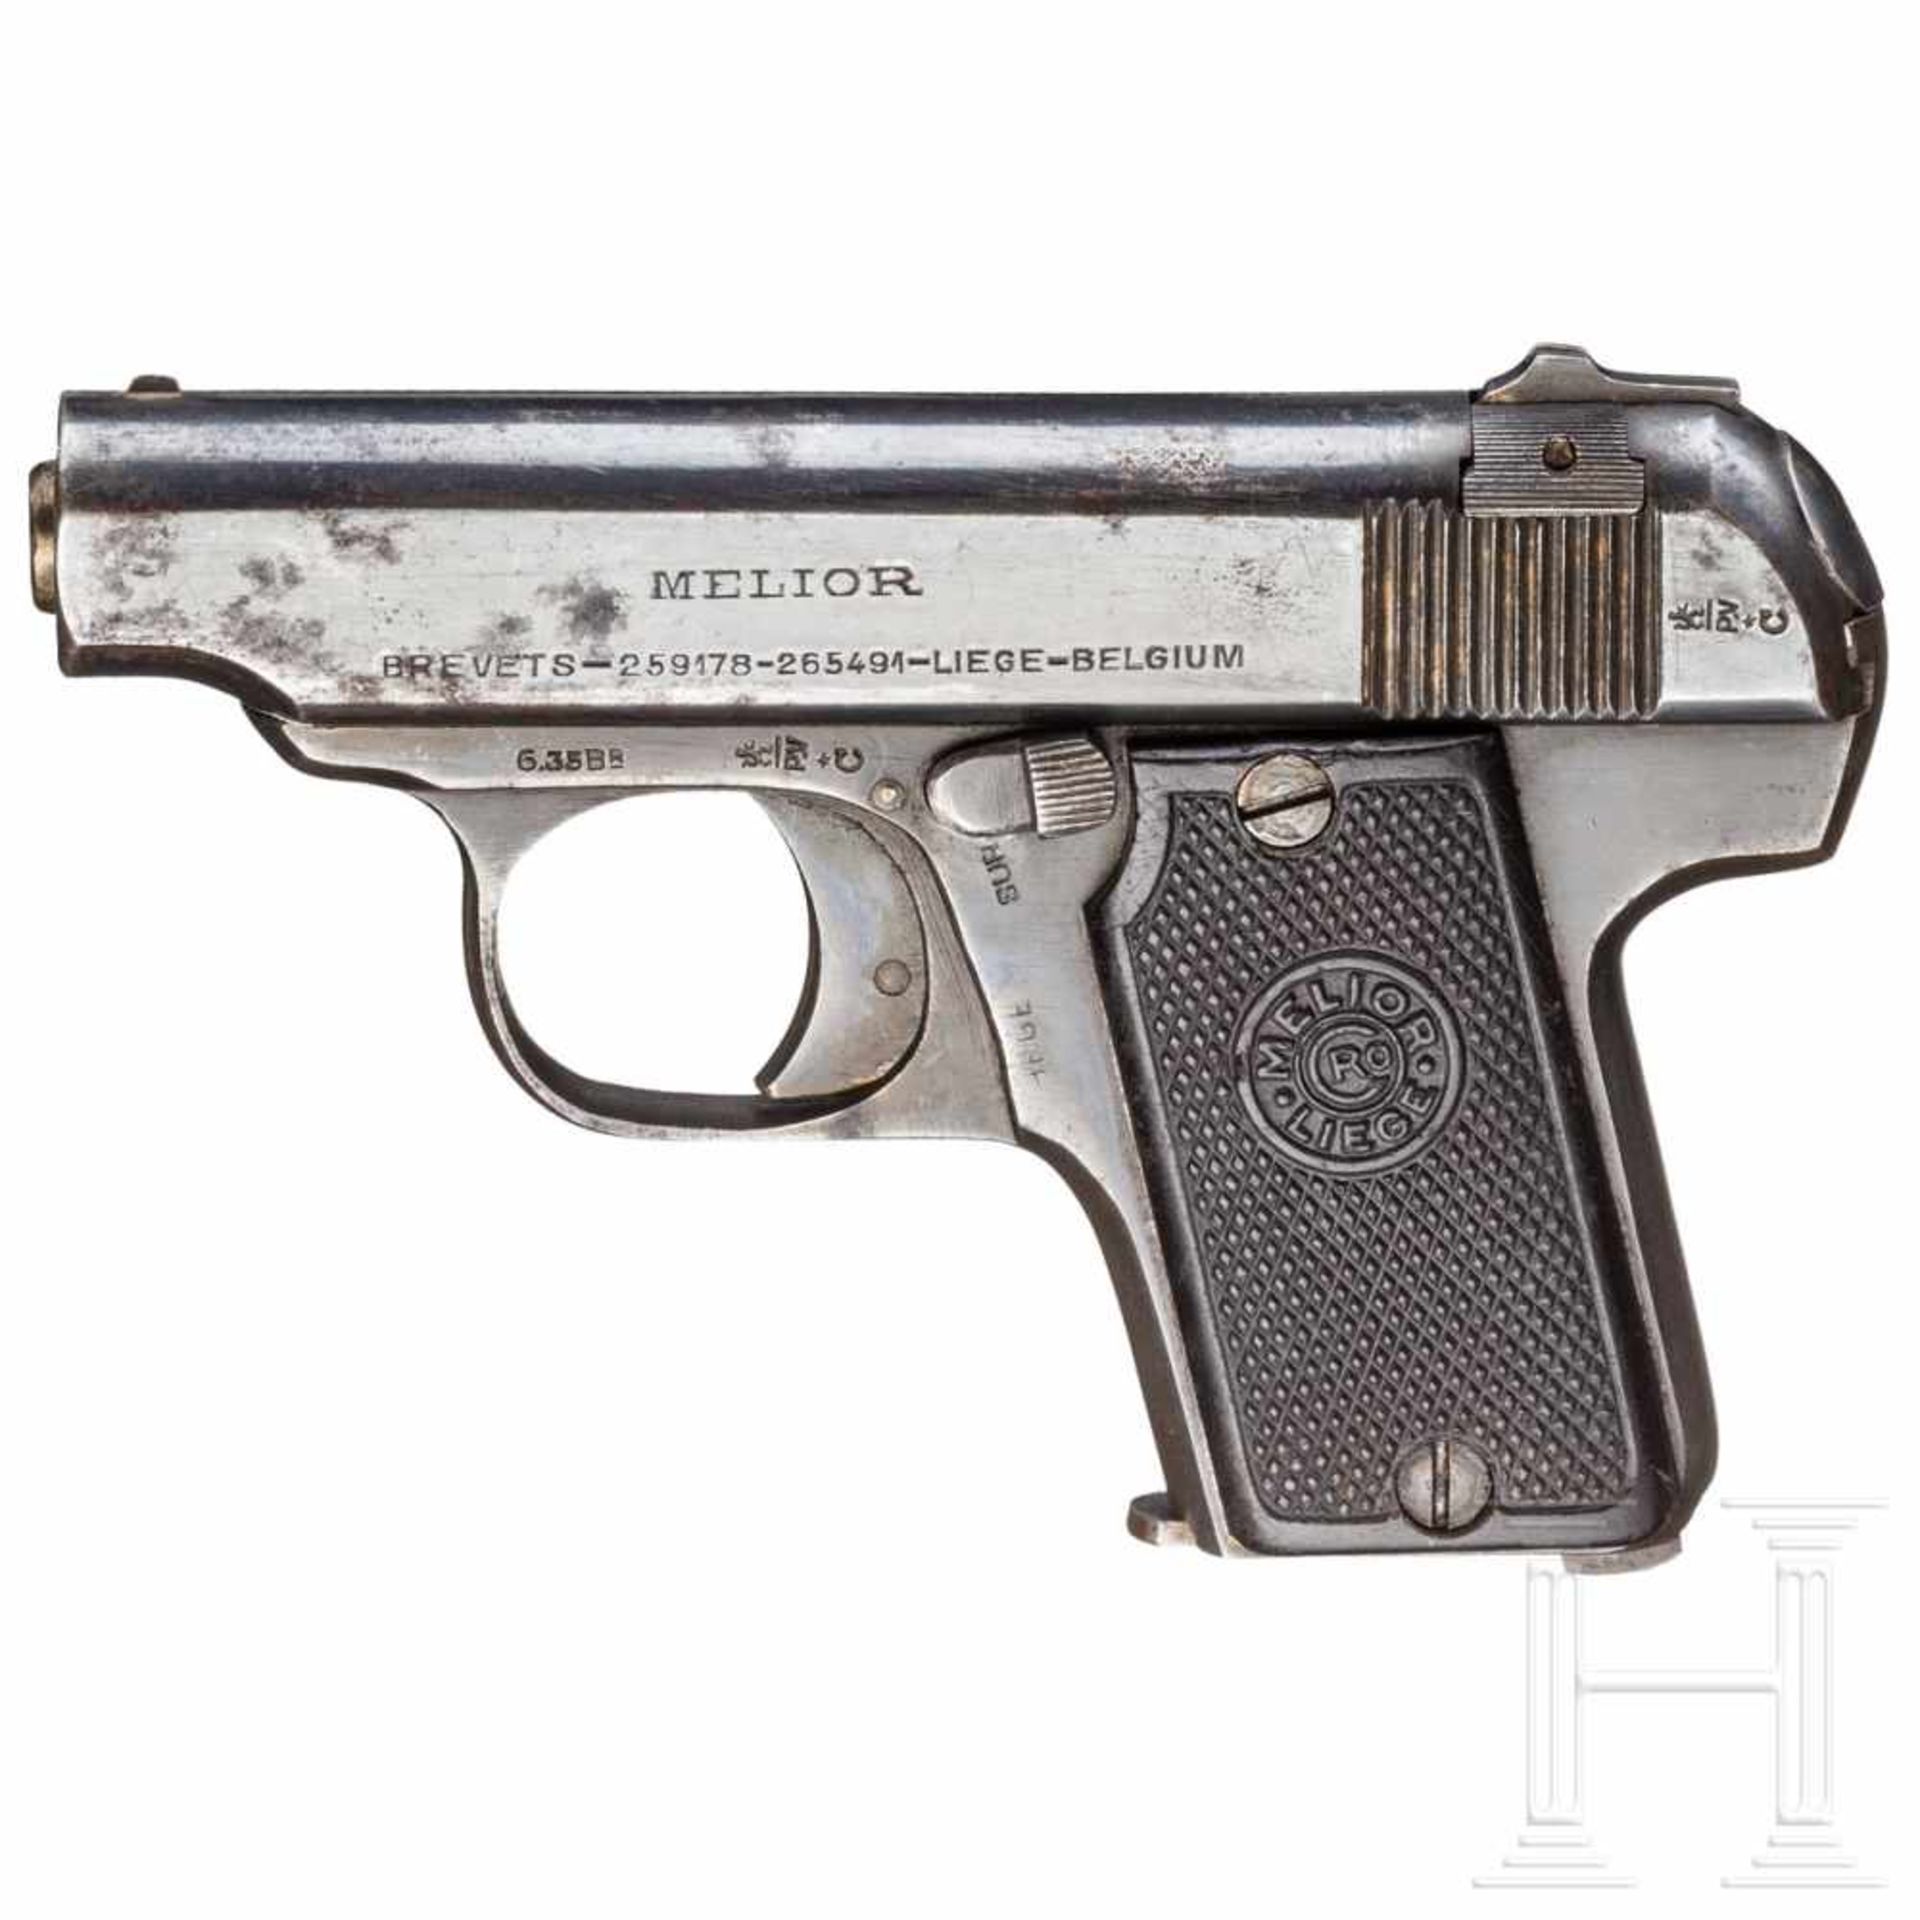 Melior "Neues Modell", mit Tasche, OffizierswaffeKal. 6,35 mm, Nr. 112085, Nummerngleich. Blanker